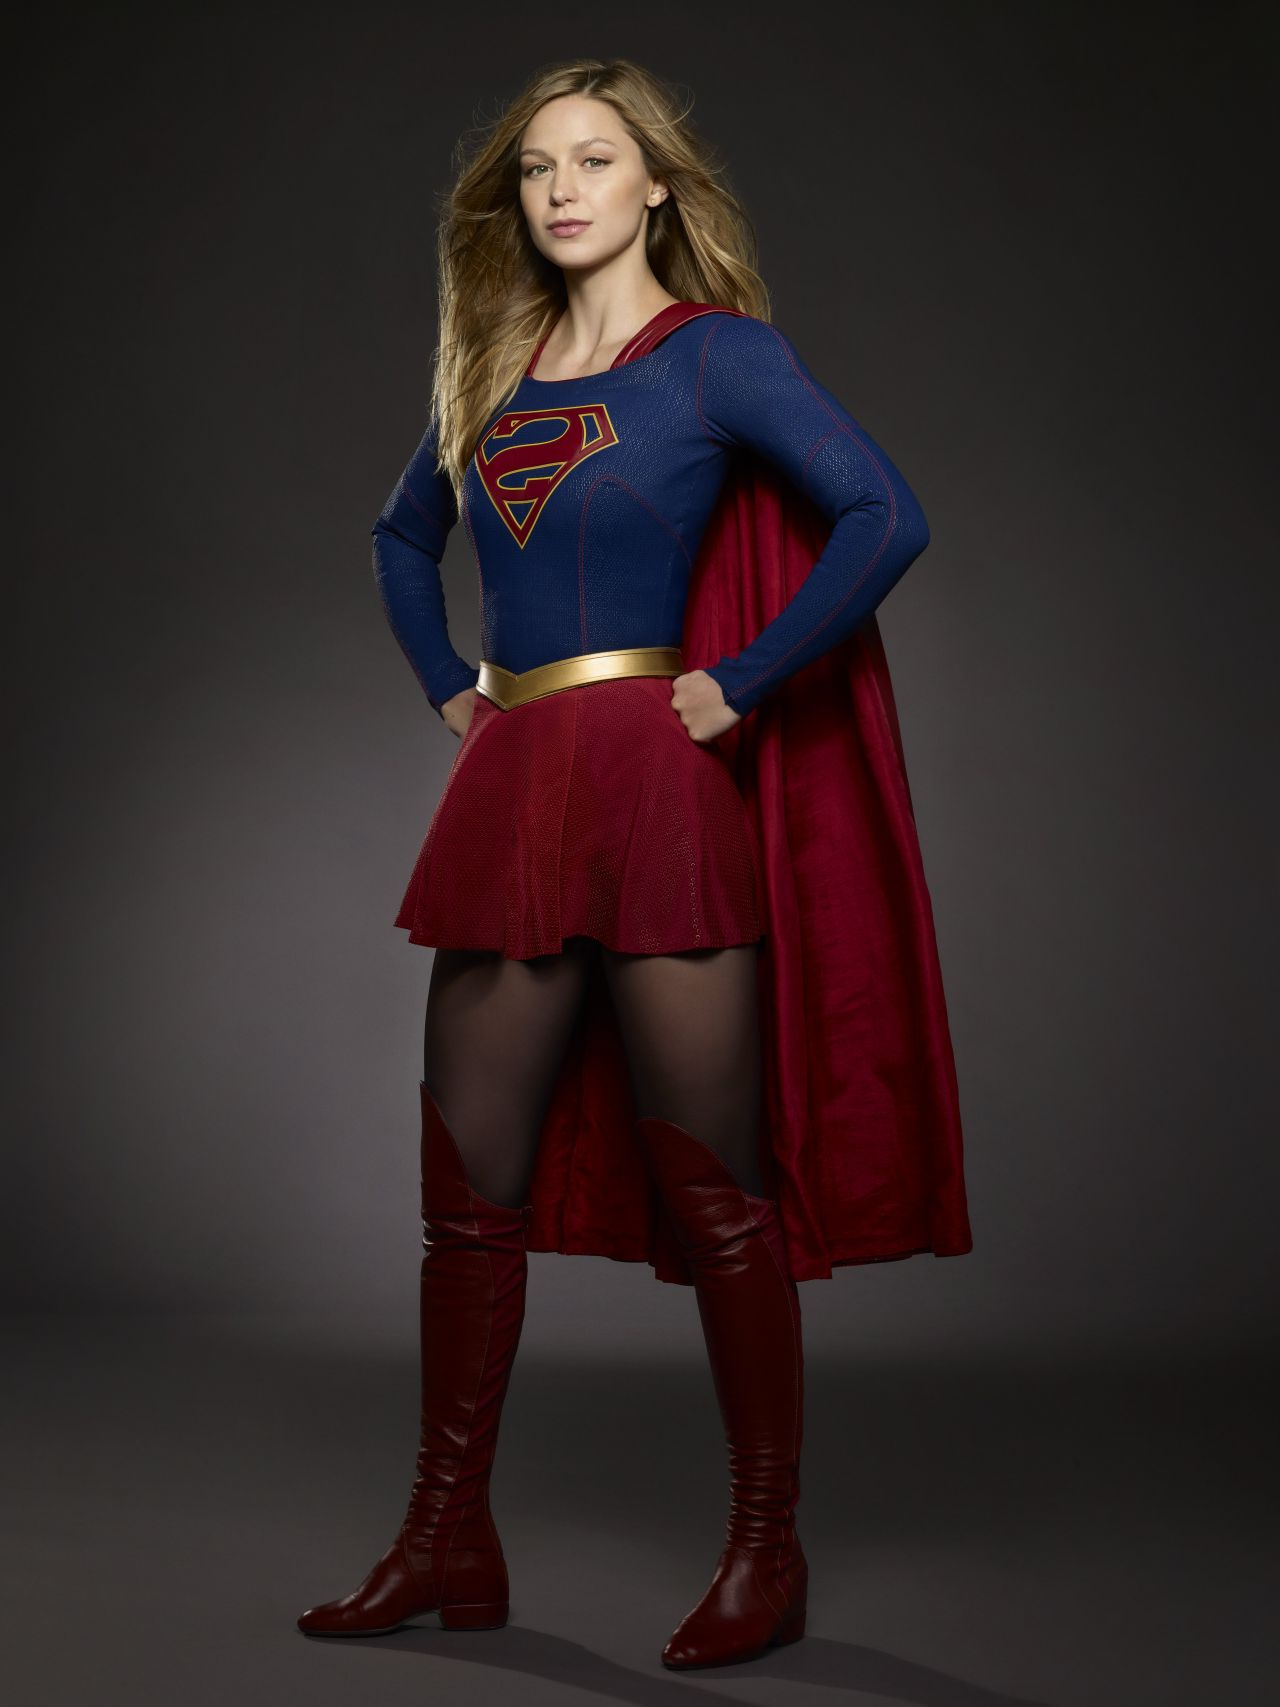 supergirlmelissabenoist